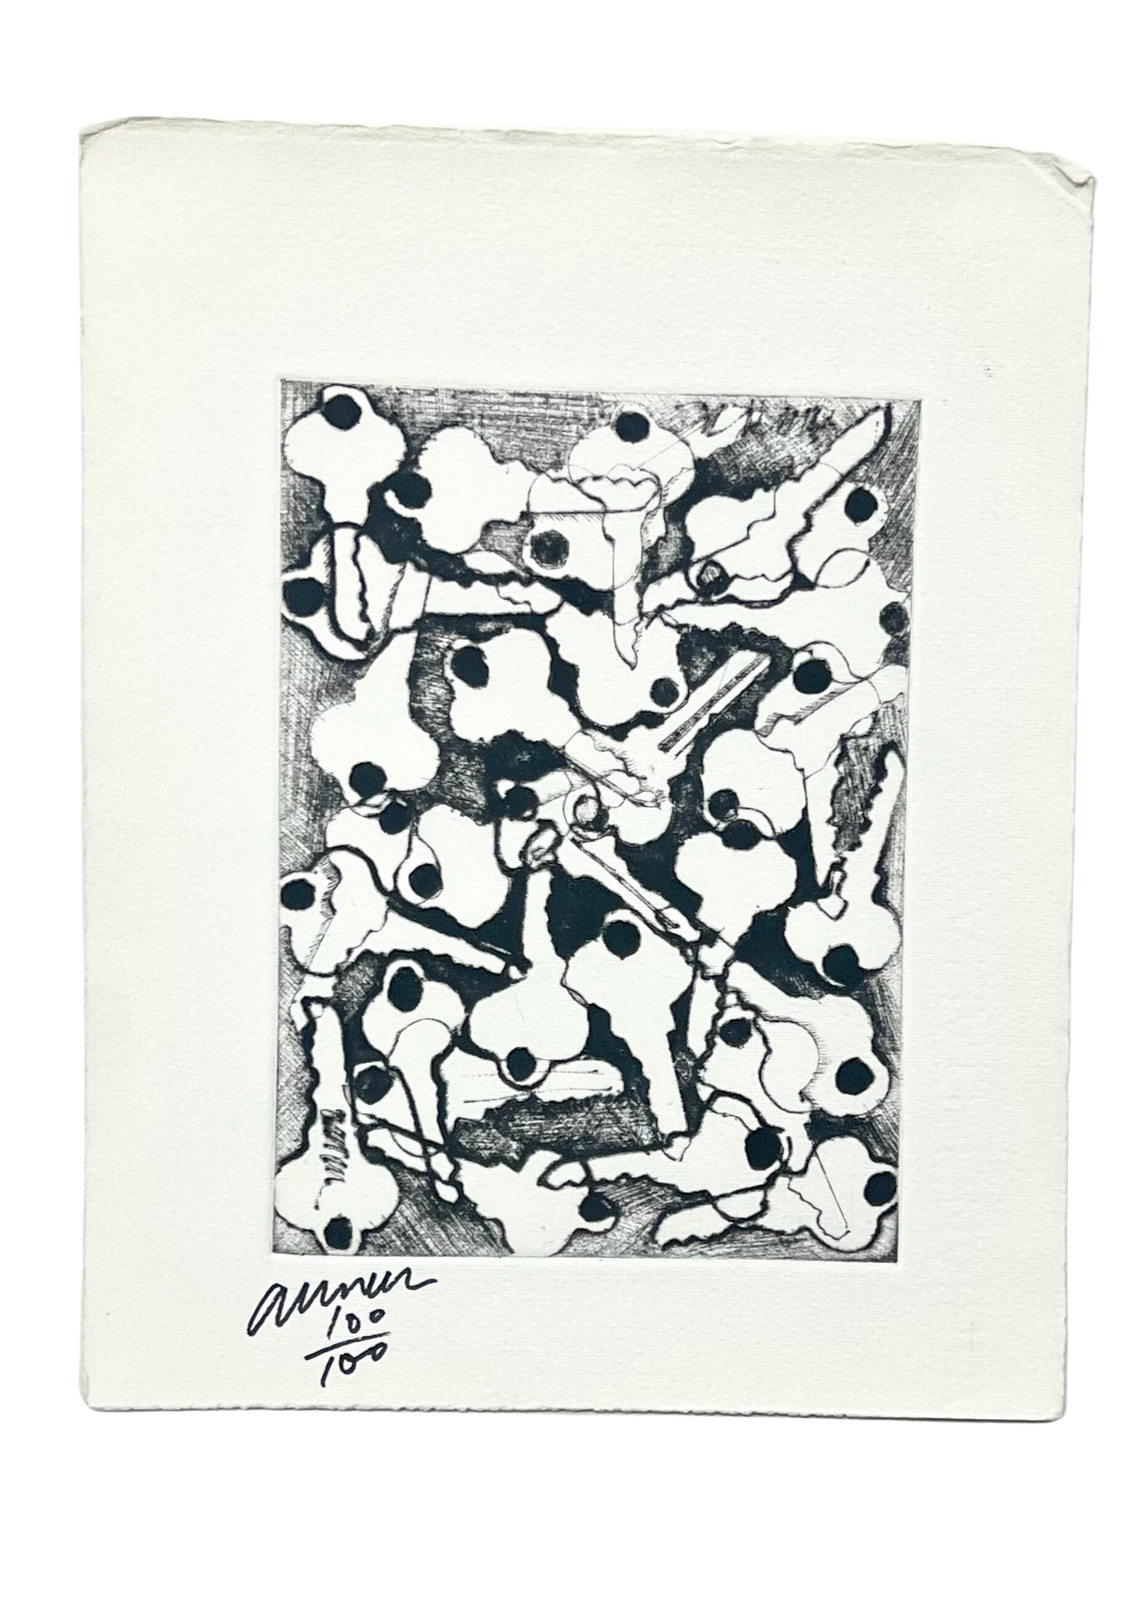 "Keys" Svartvit etsning av Arman. Nr 100/100. Från 1960. 19,7x25 cm